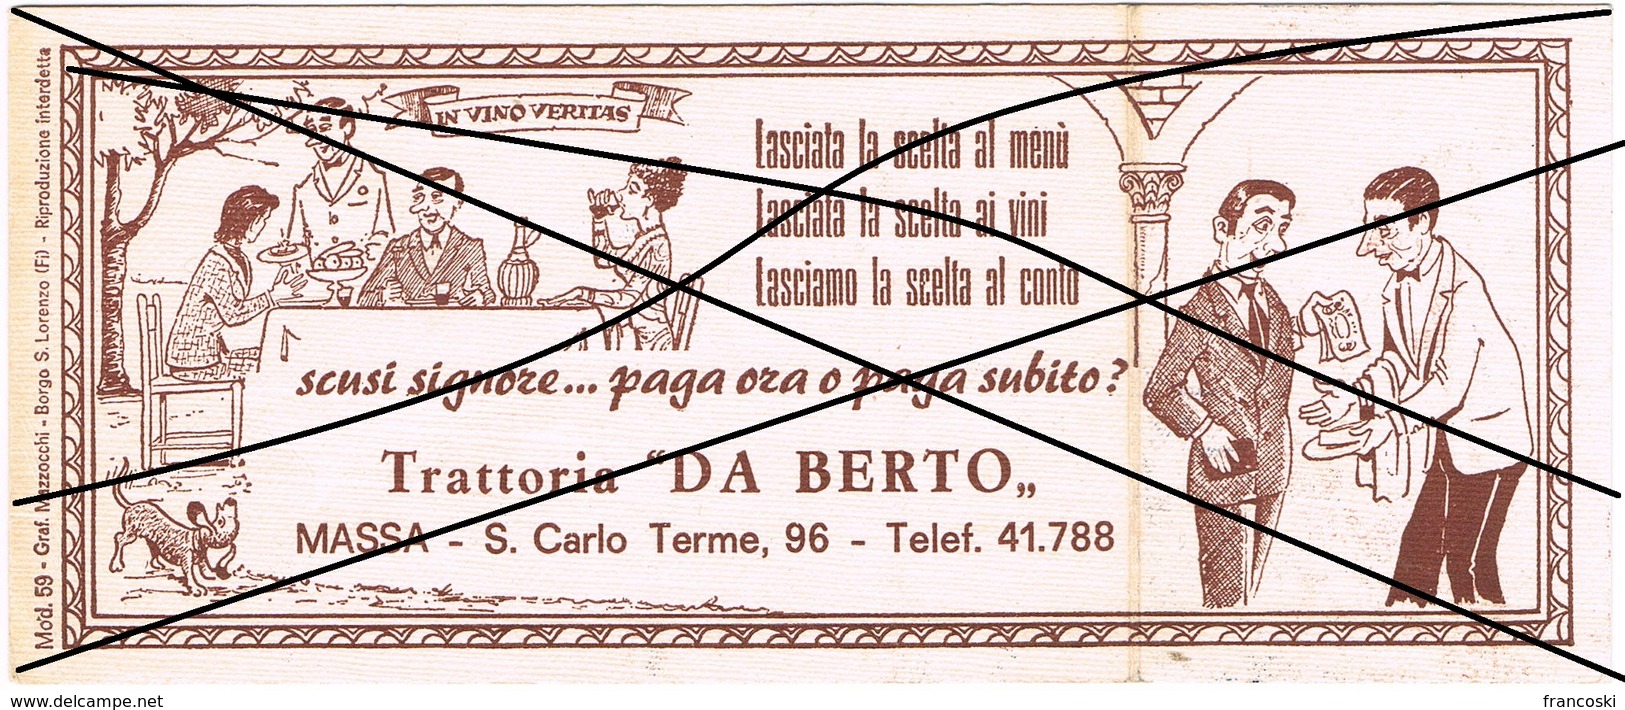 Massa- Trattoria "Da Berto"- Via S.Carlo Terme,96-Depliant Pieghevole Vintage - Programmi